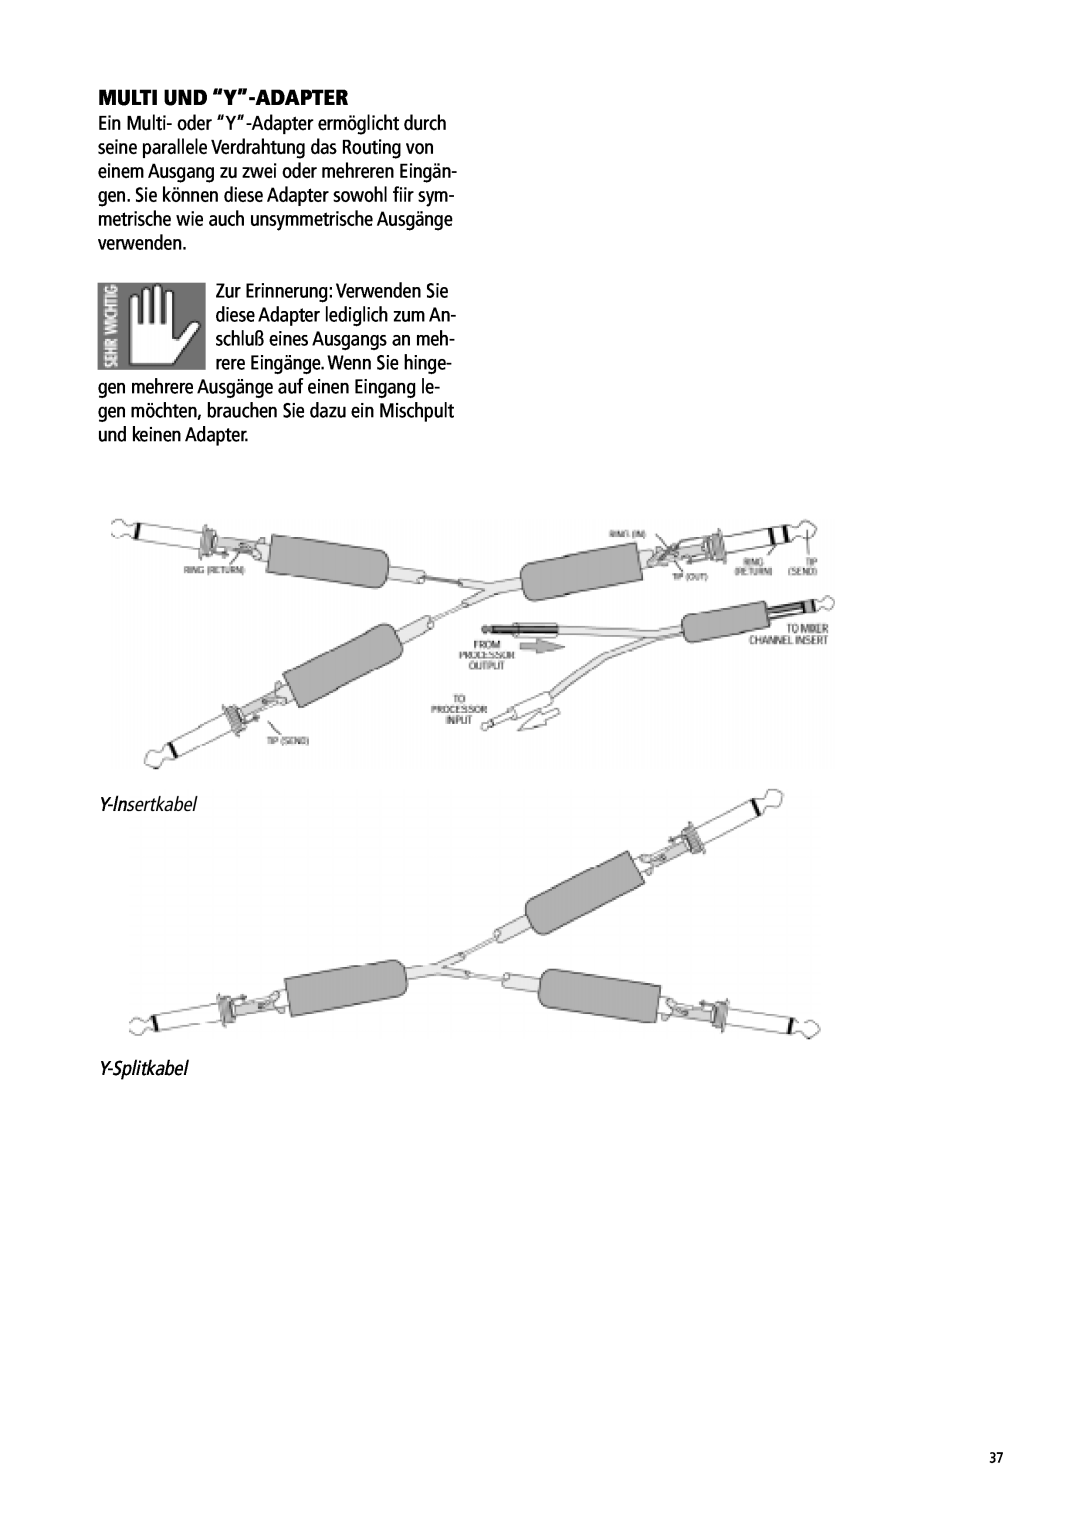 Mackie 1604-VLZ manual Multi Und “Y”-Adapter, Y-lnsertkabel Y-Splitkabel 